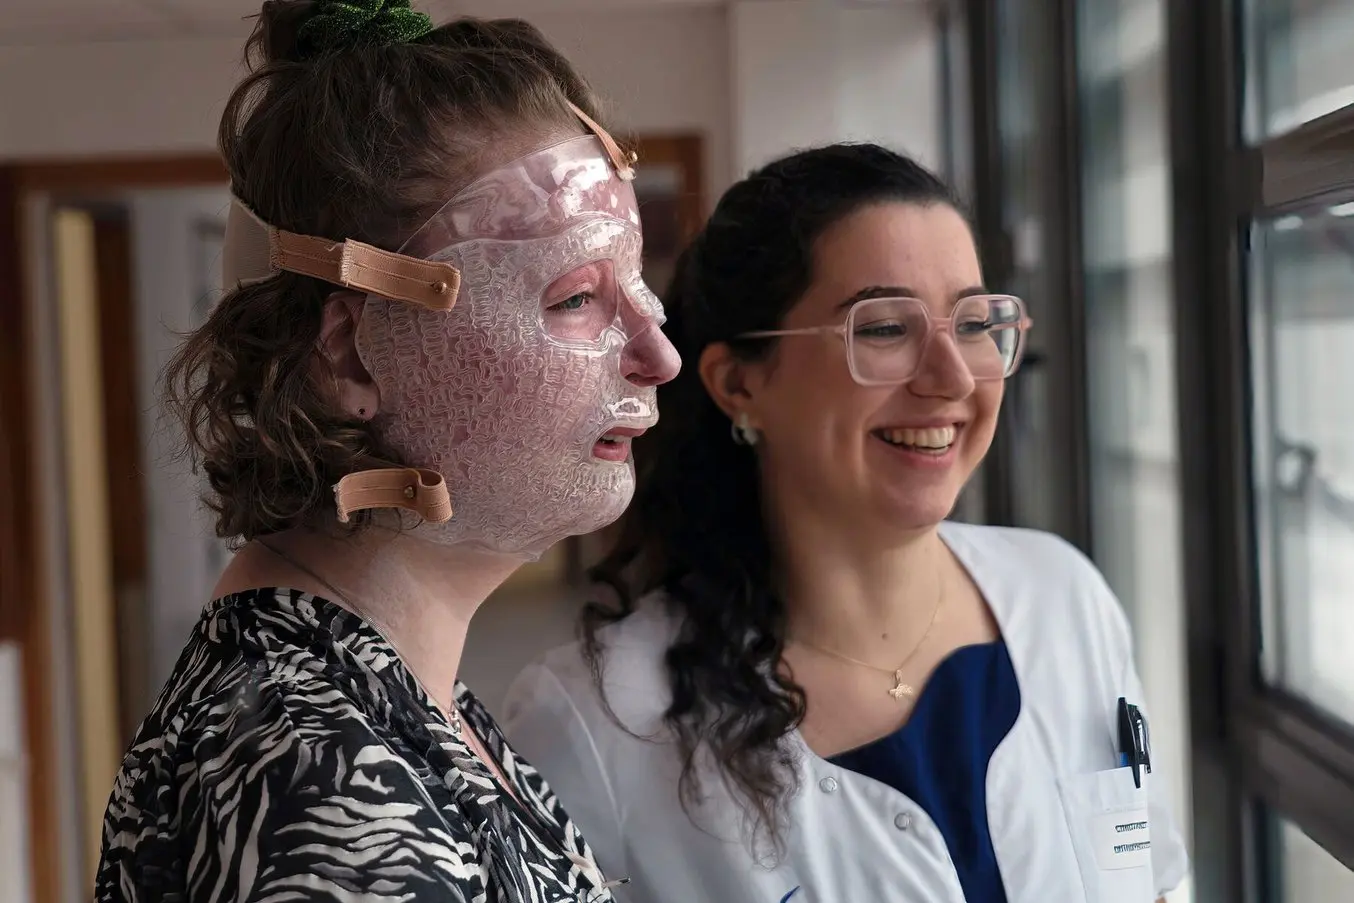 Une patiente souffrant de graves brûlures porte un masque facial fabriqué par impression 3D.